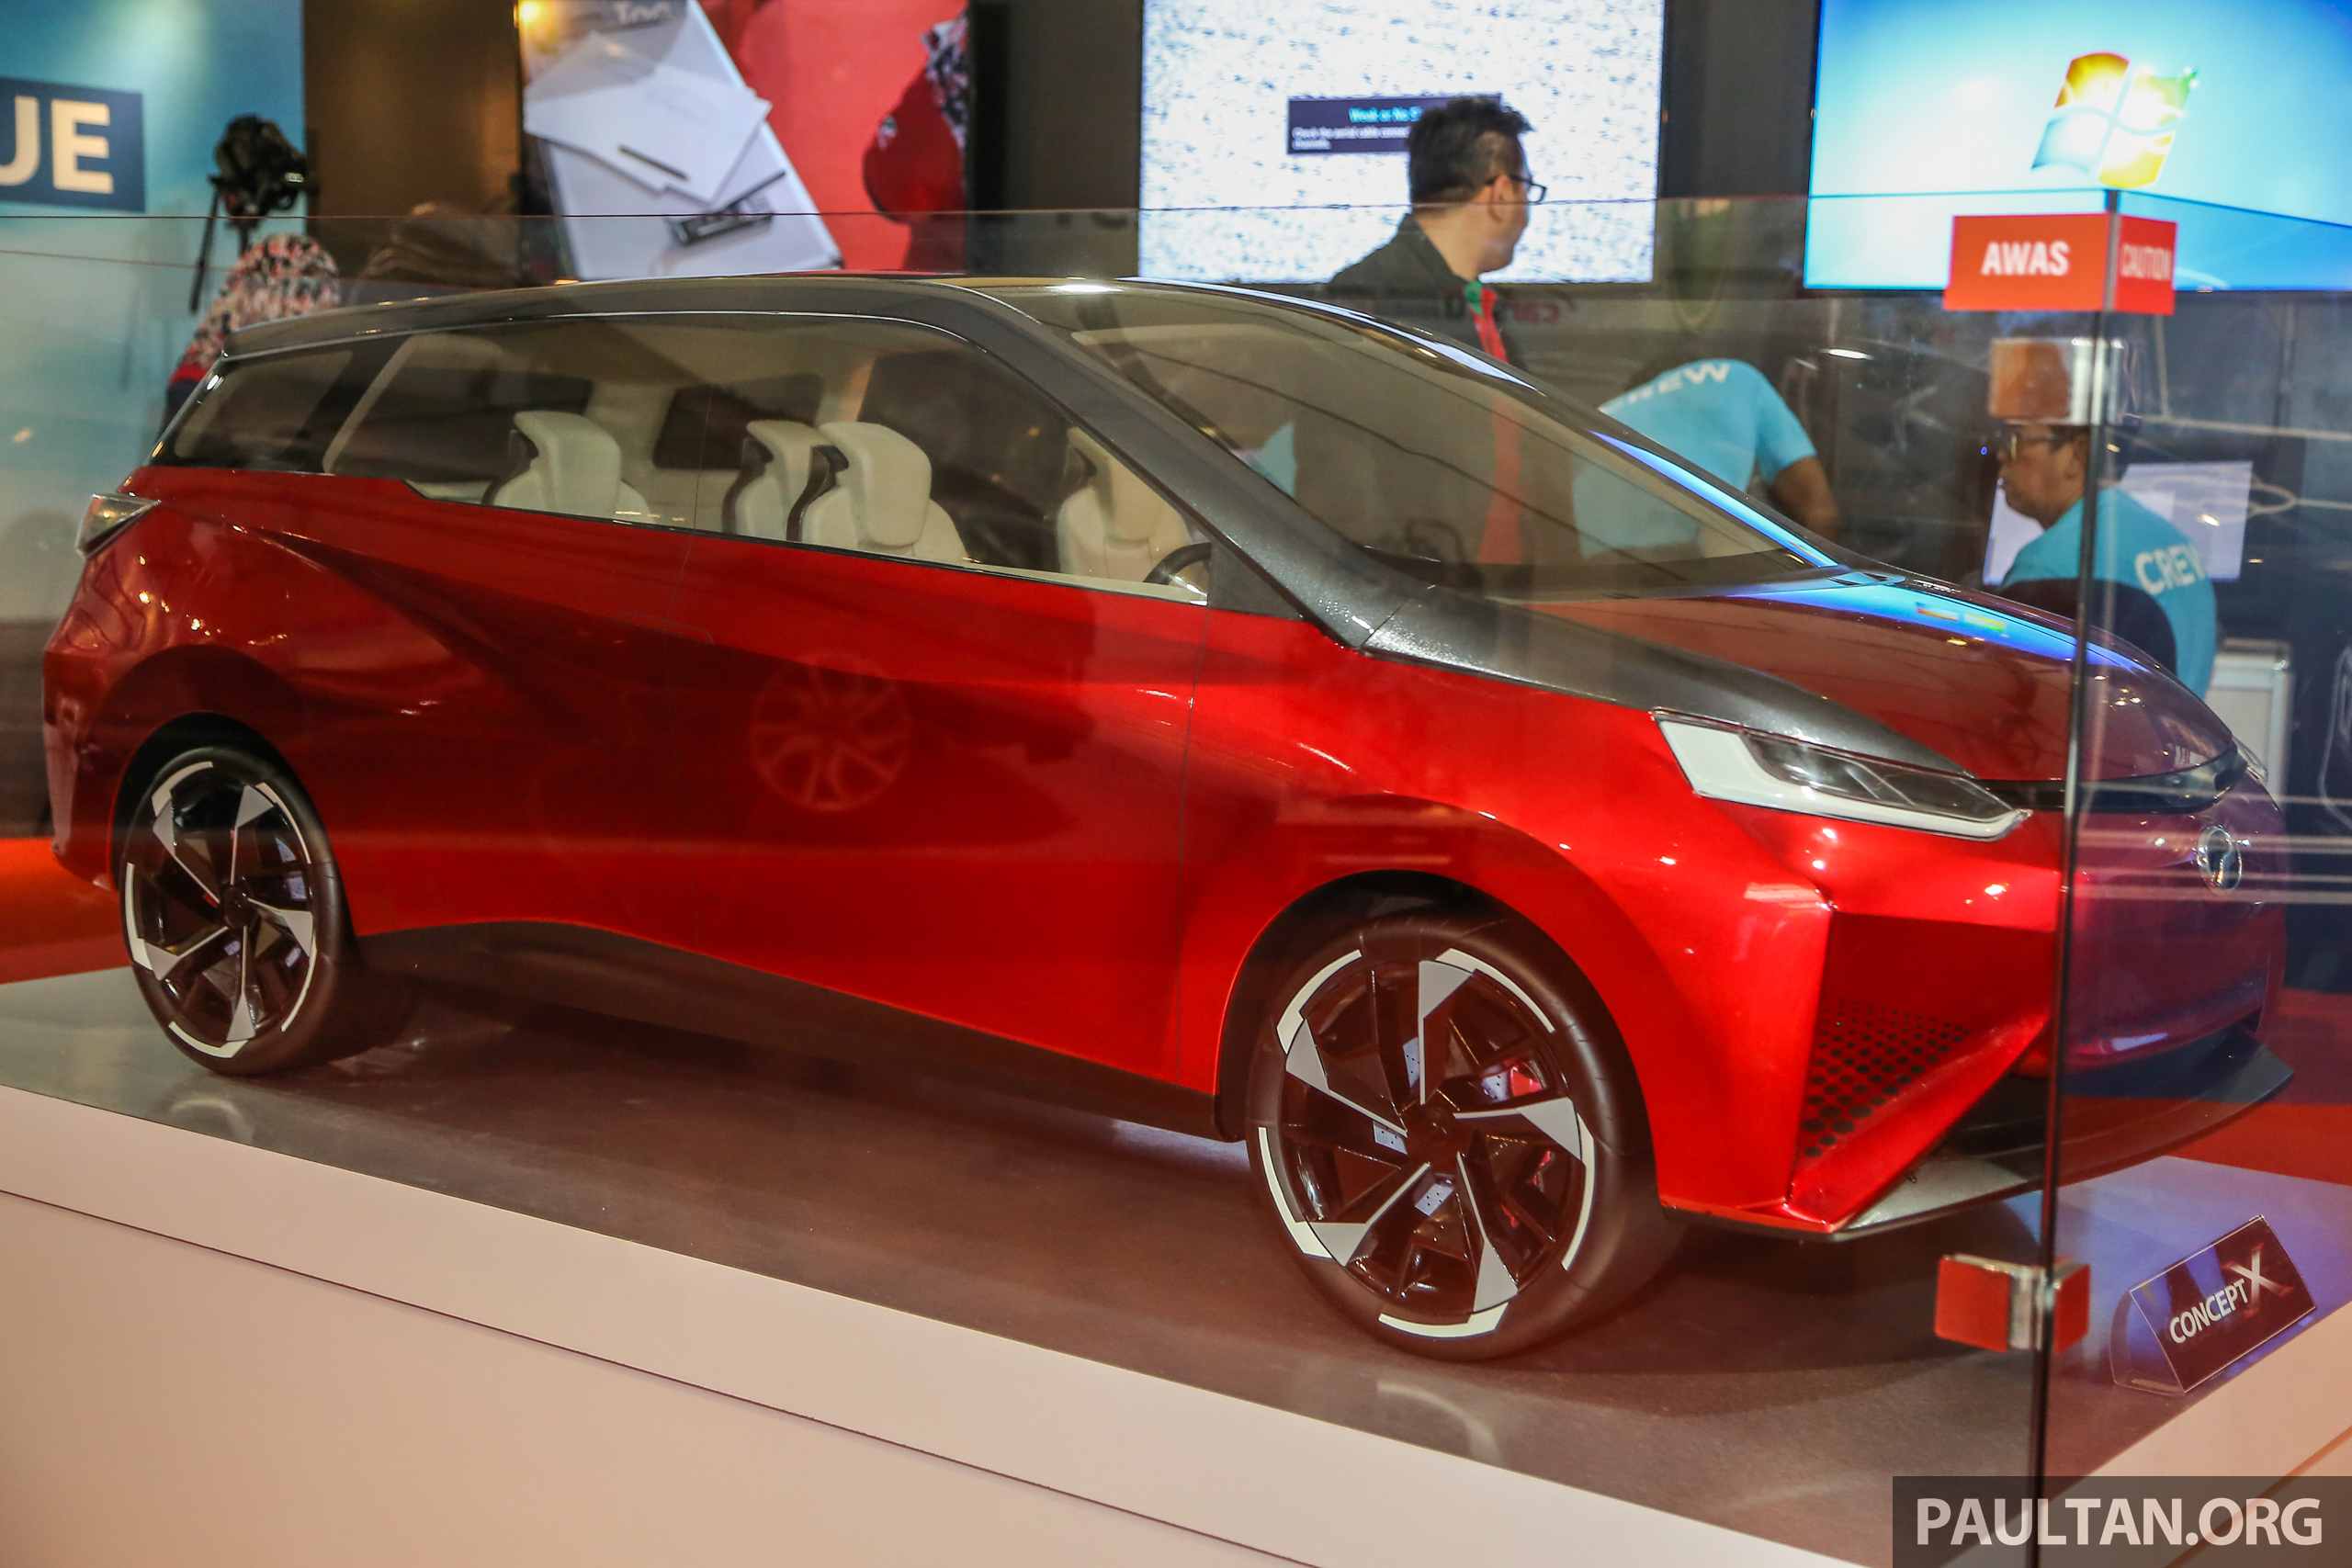 Perodua akan pamerkan kereta konsep di KLIMS 2018